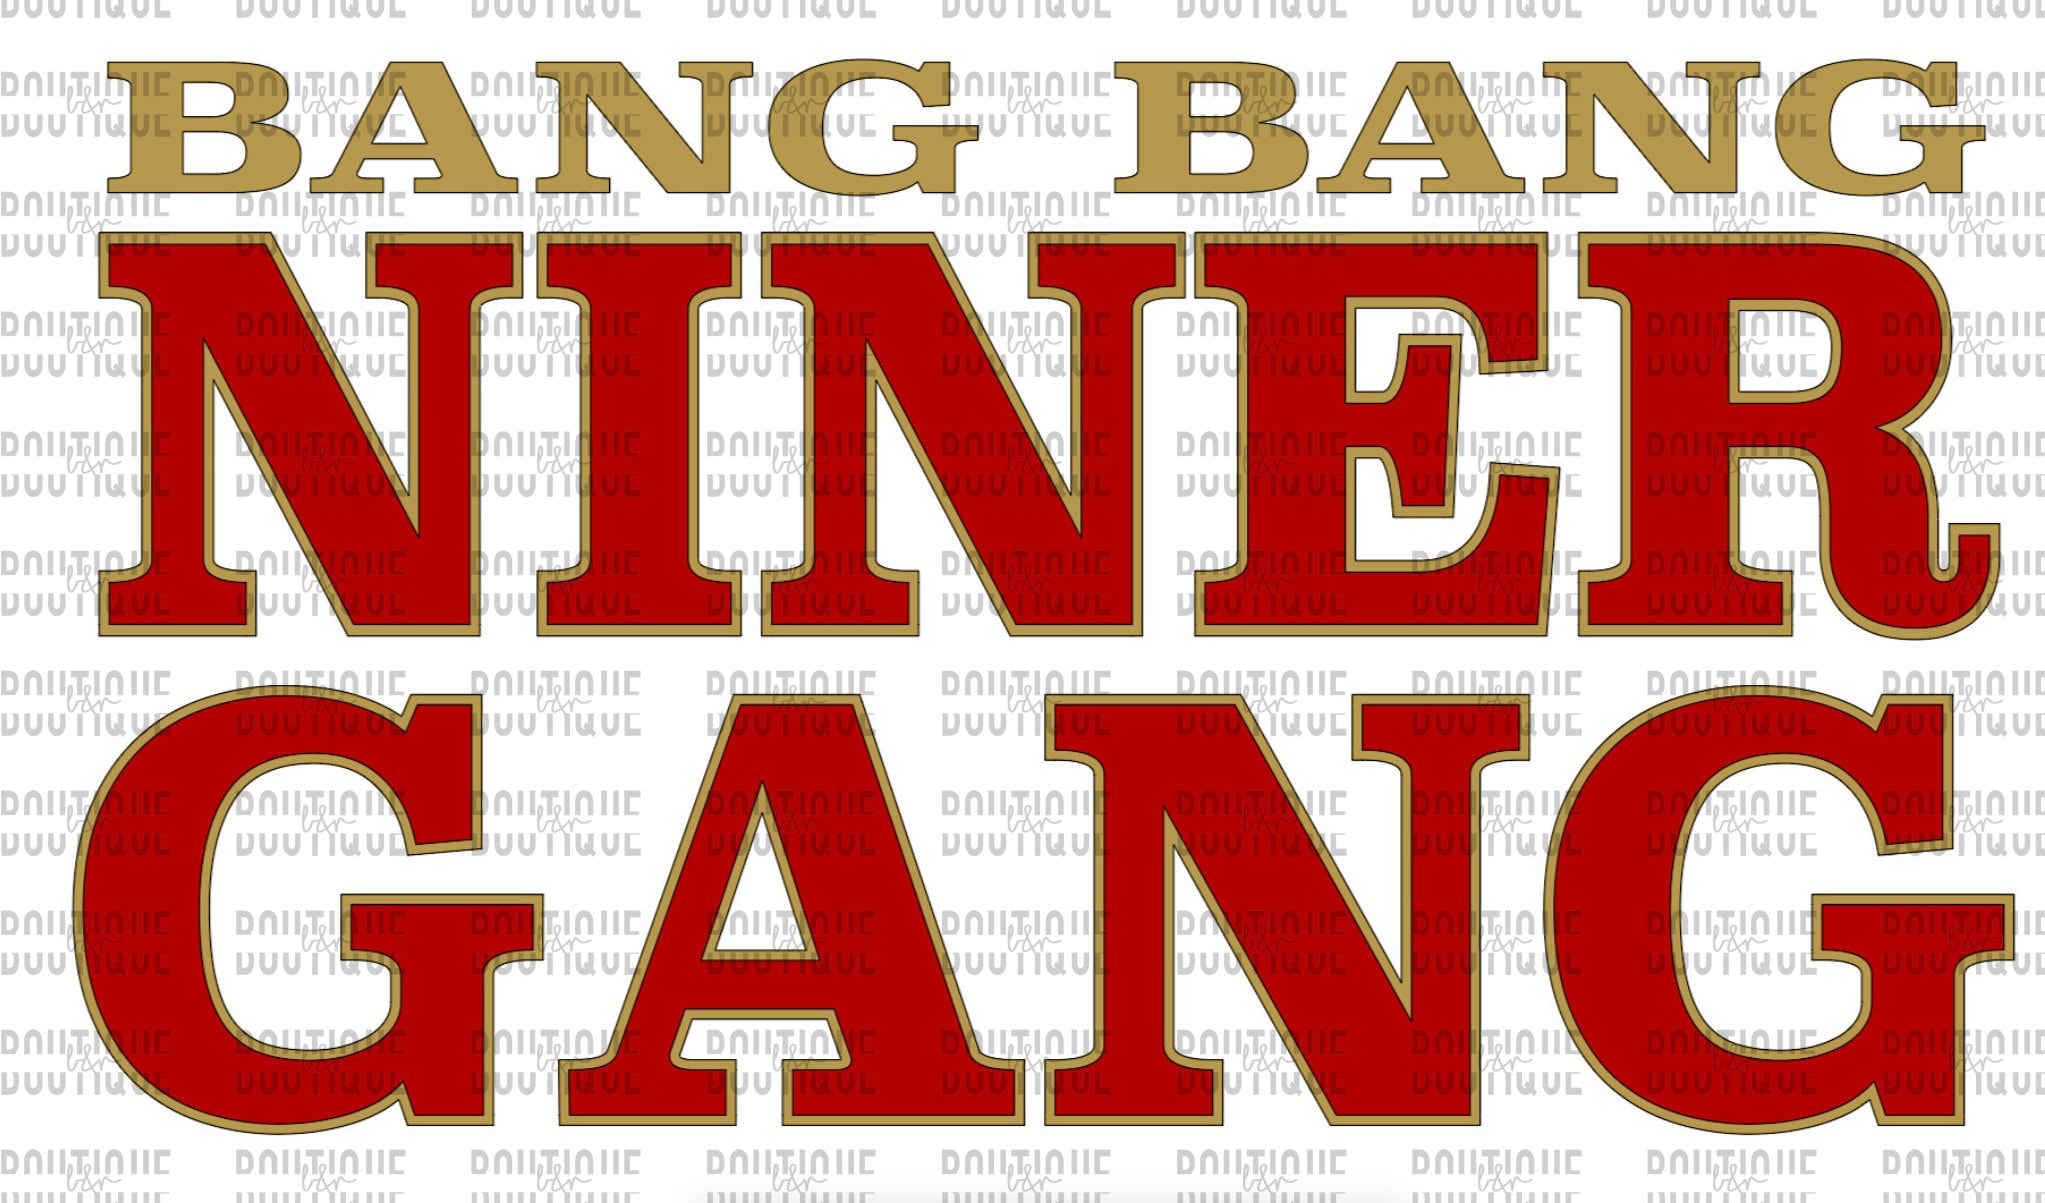 49ers BANG BANG NINER GANG Mug  Color-Changing 49ers Mug –